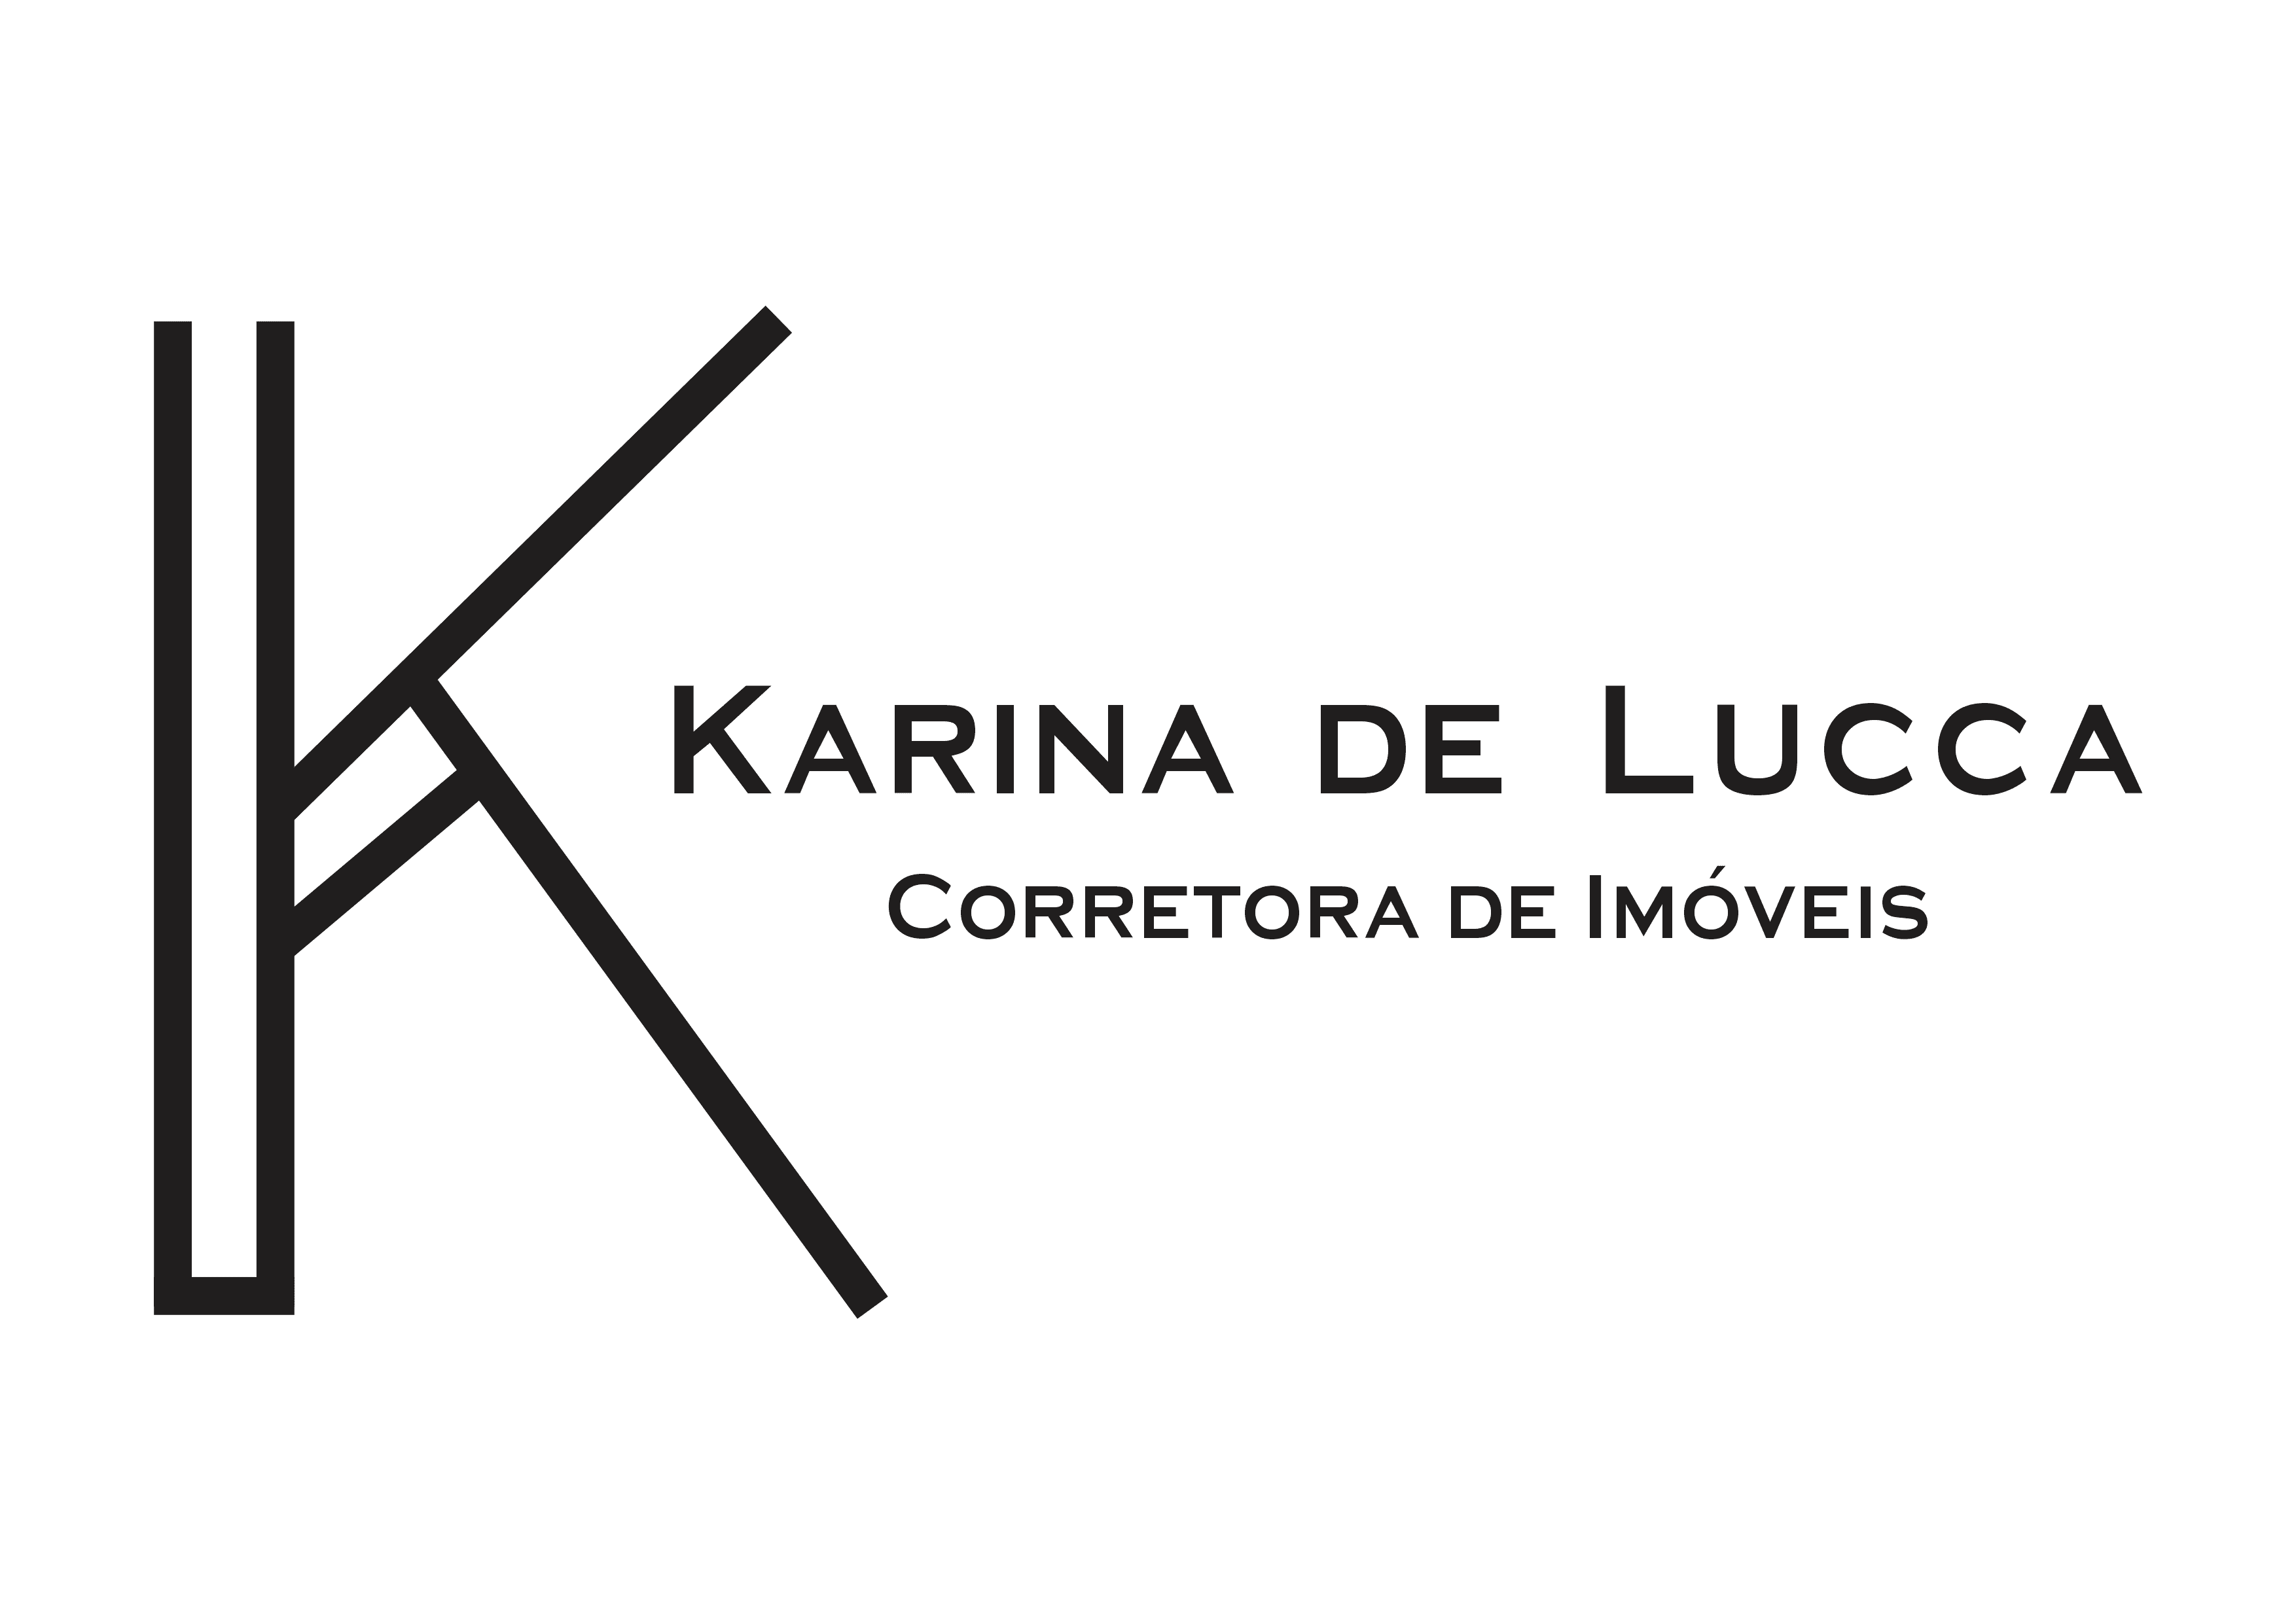 Karina de Lucca - Corretora de Imóveis